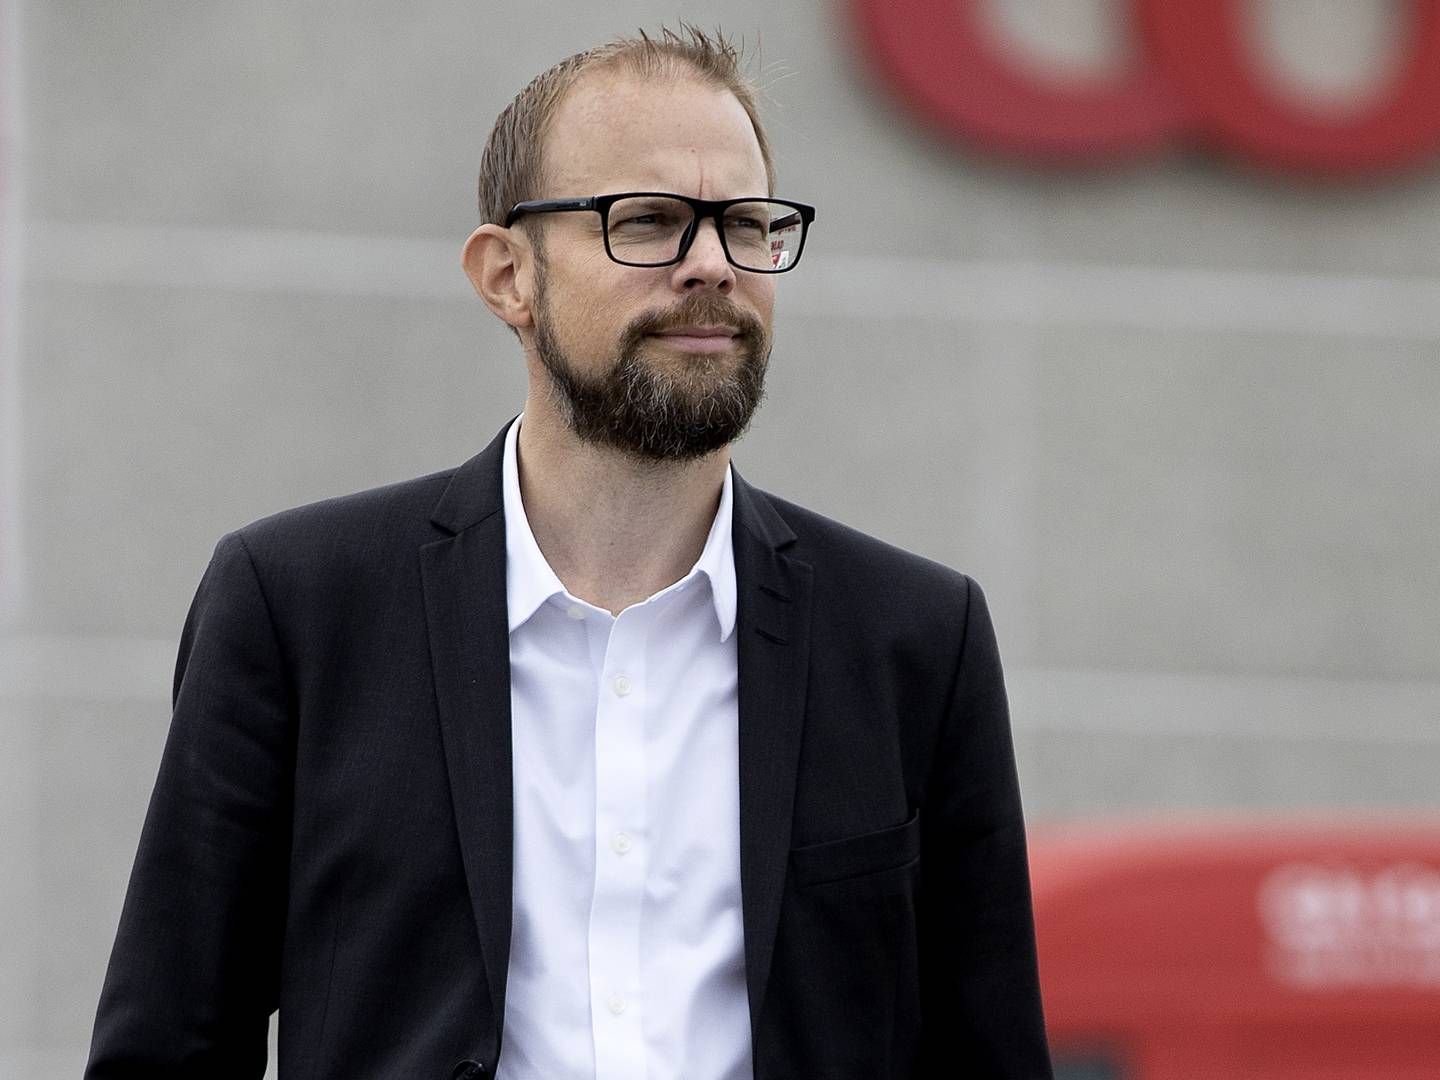 Kræn Østergaard afløste i september 2020 Peter Høgsted som adm. direktør for Coop Danmark. | Foto: Finn Frandsen